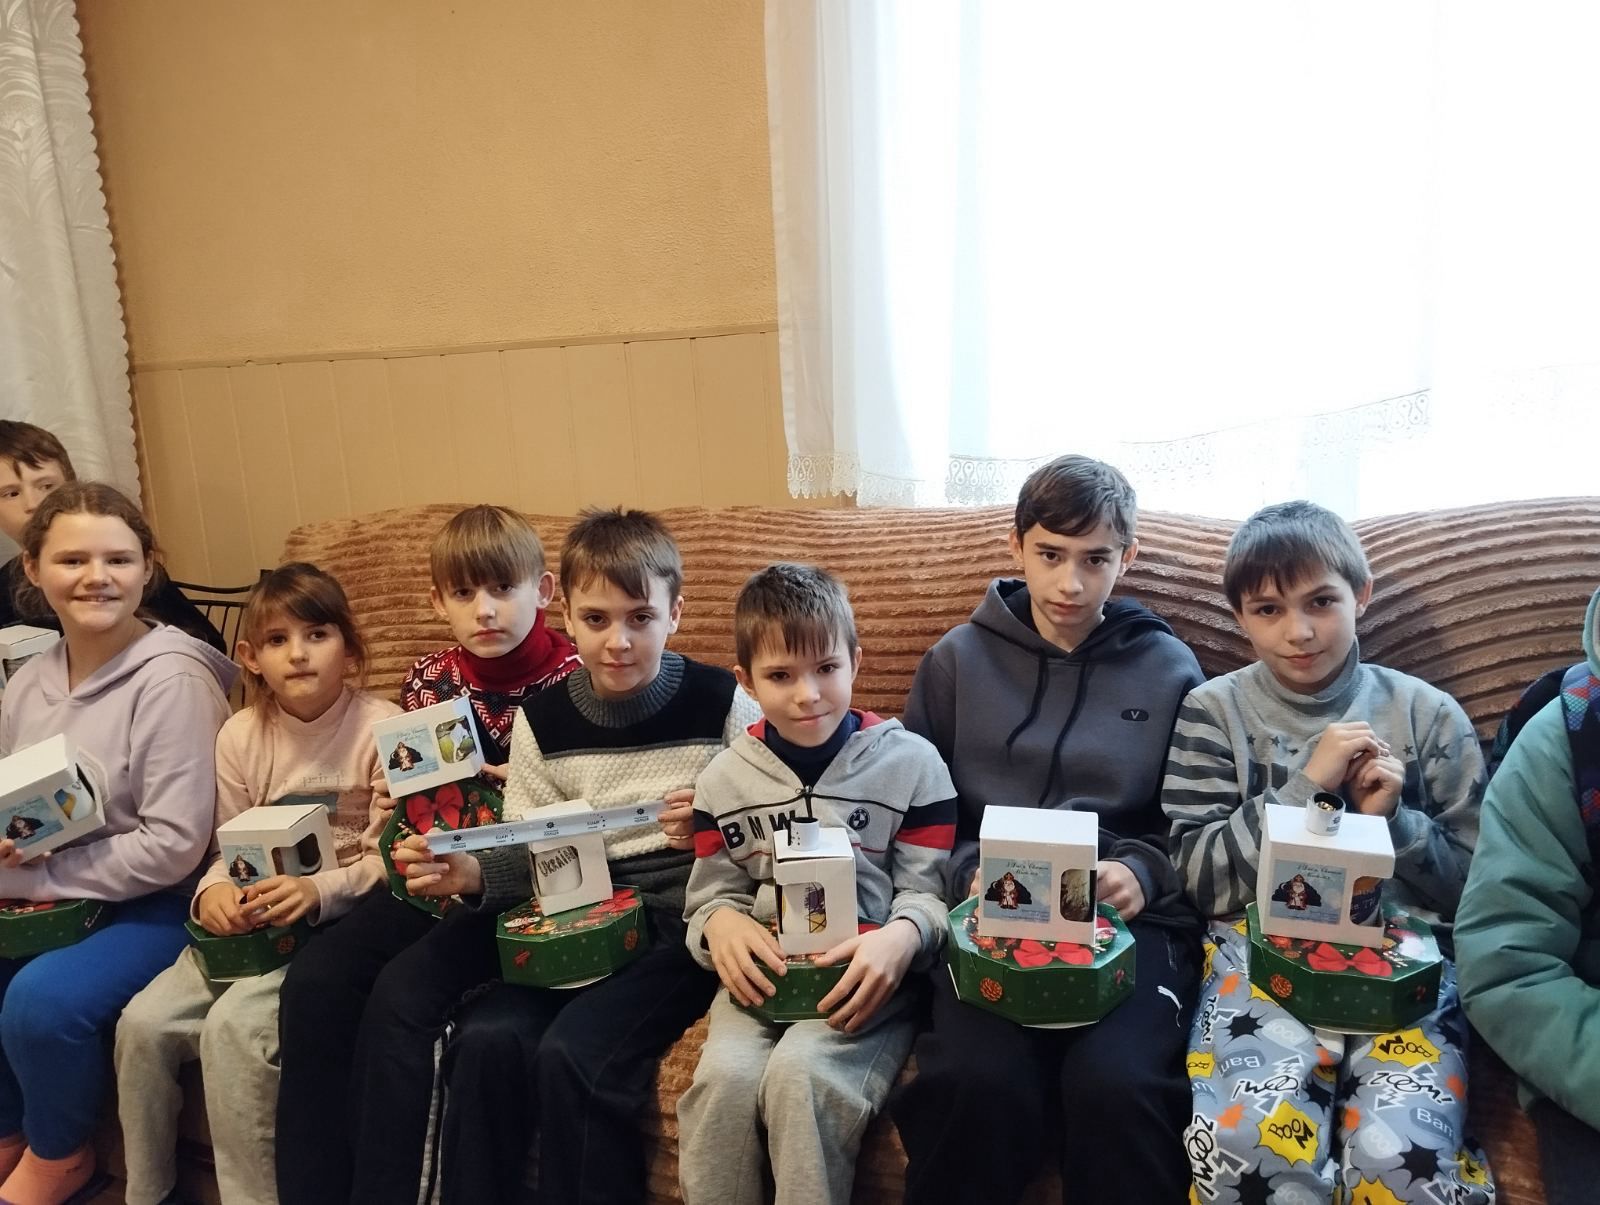 Оперативная группировка войск "Дунай" и полиция Болграда дарят радость для детей с тяжелой судьбой